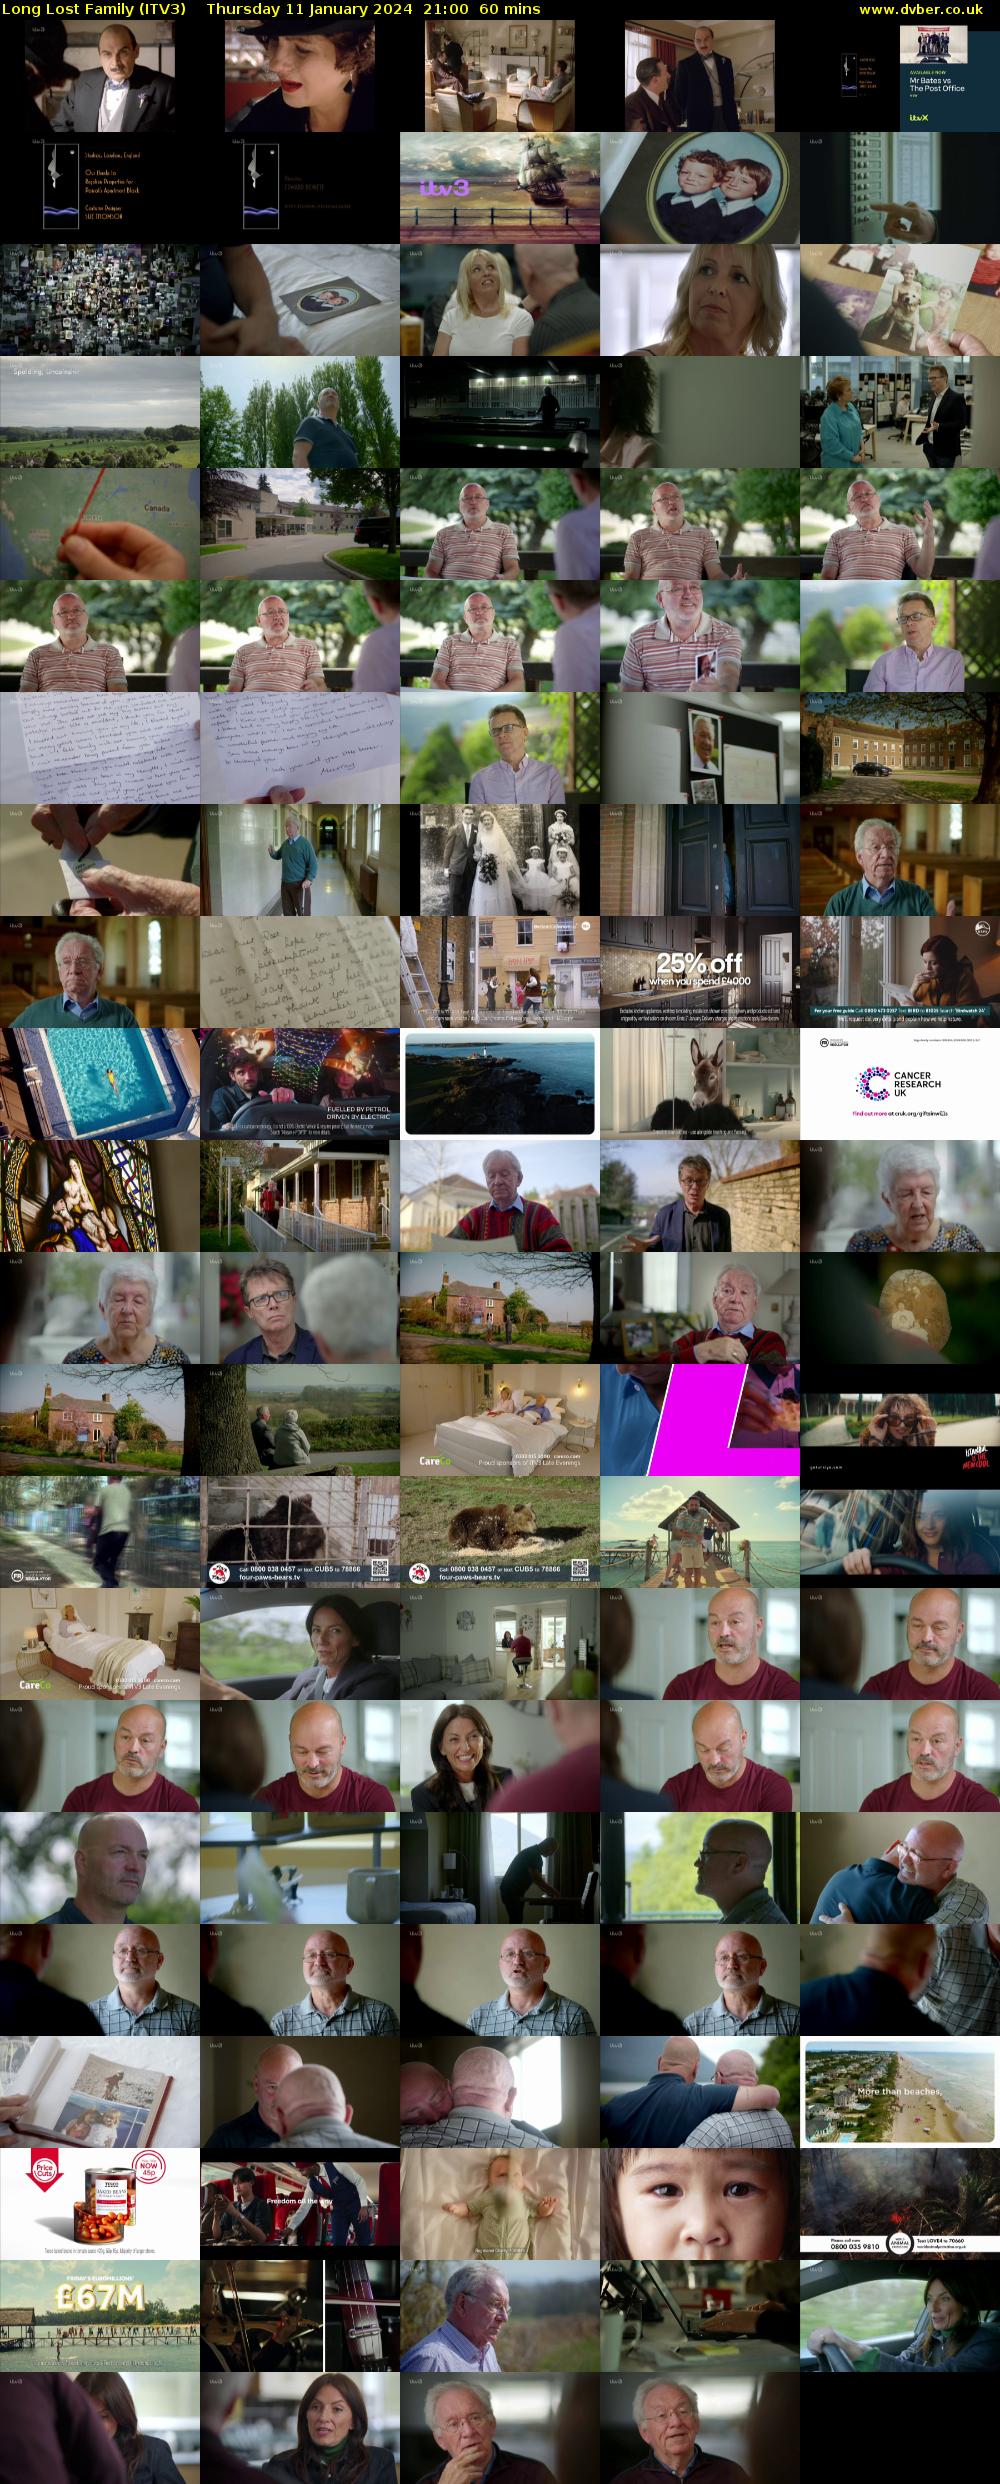 Long Lost Family (ITV3) Thursday 11 January 2024 21:00 - 22:00